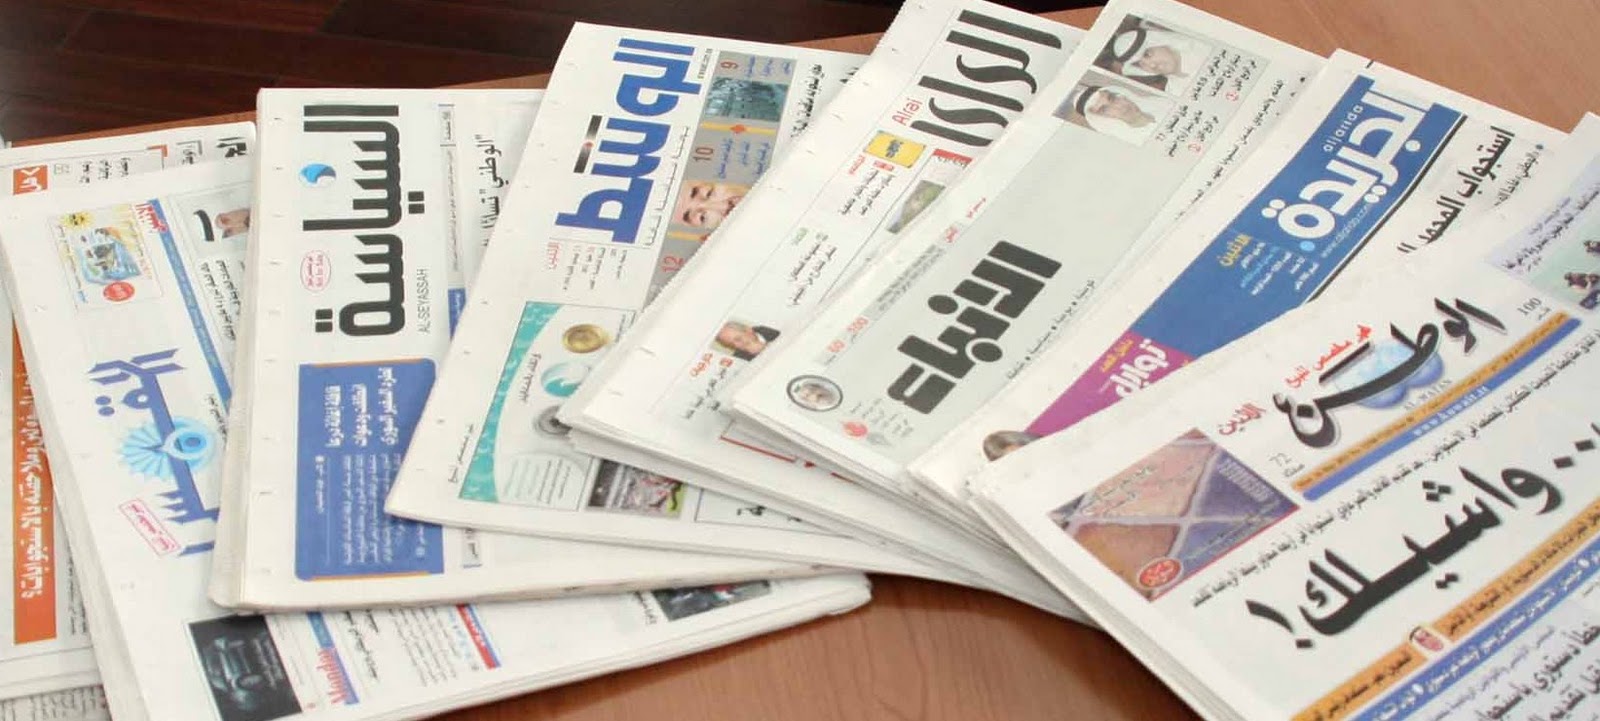 الجرائد و الصحف في الكويت